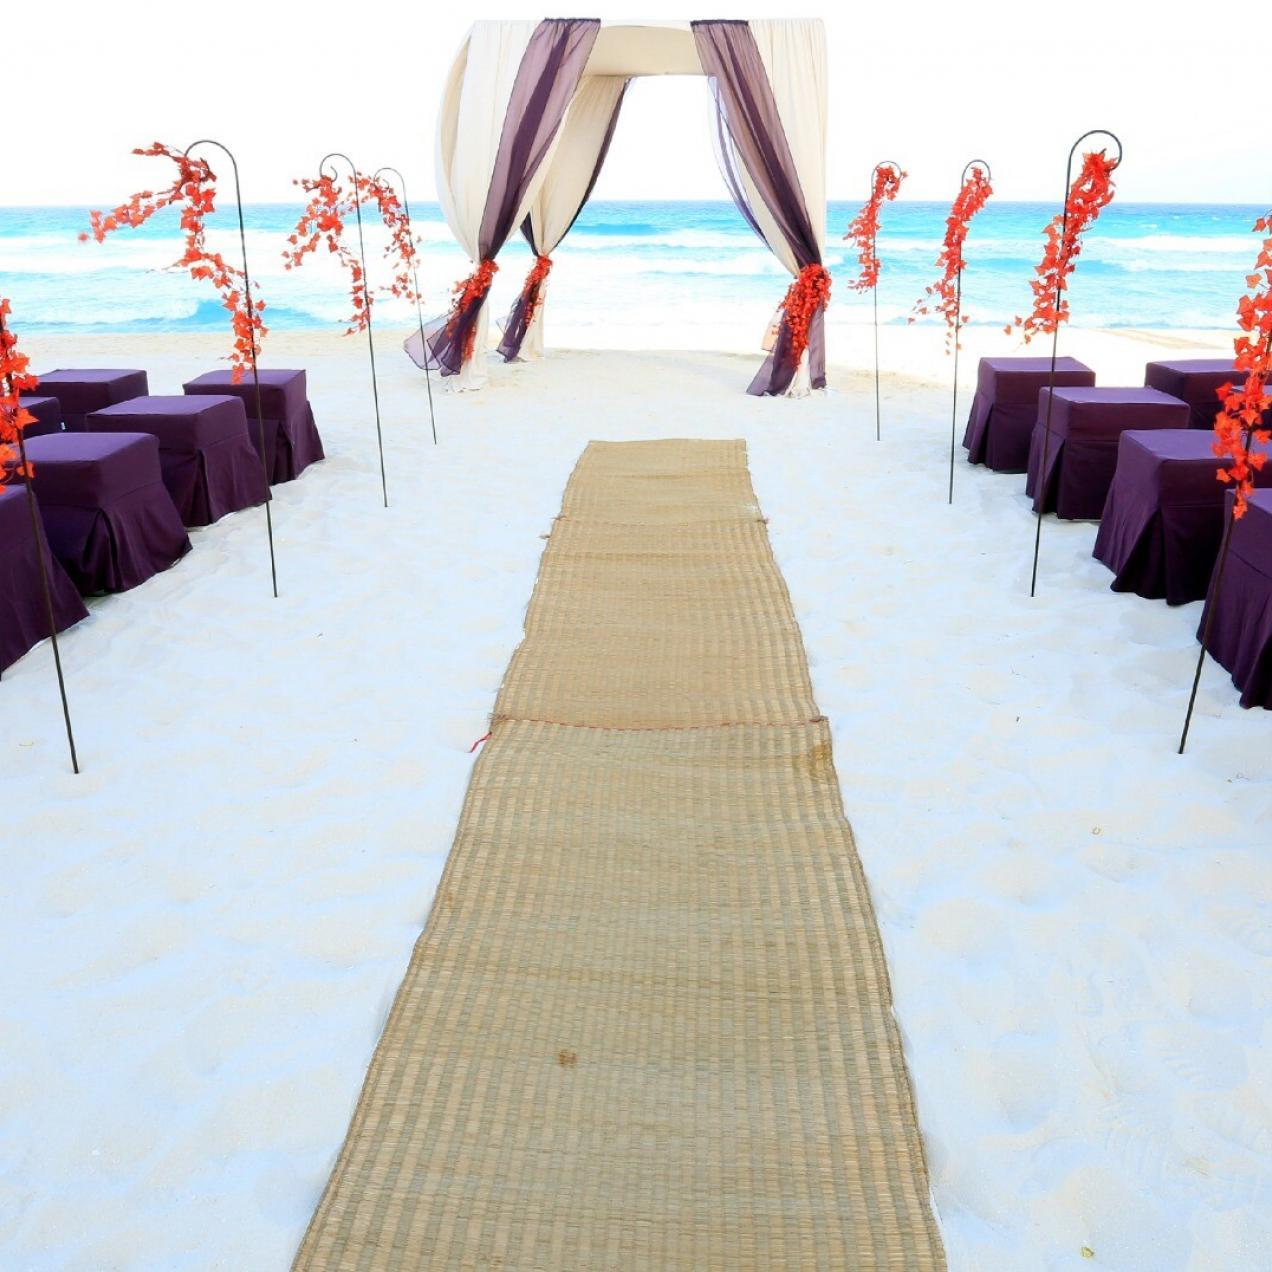 The Sandos Cancun Wedding Collection